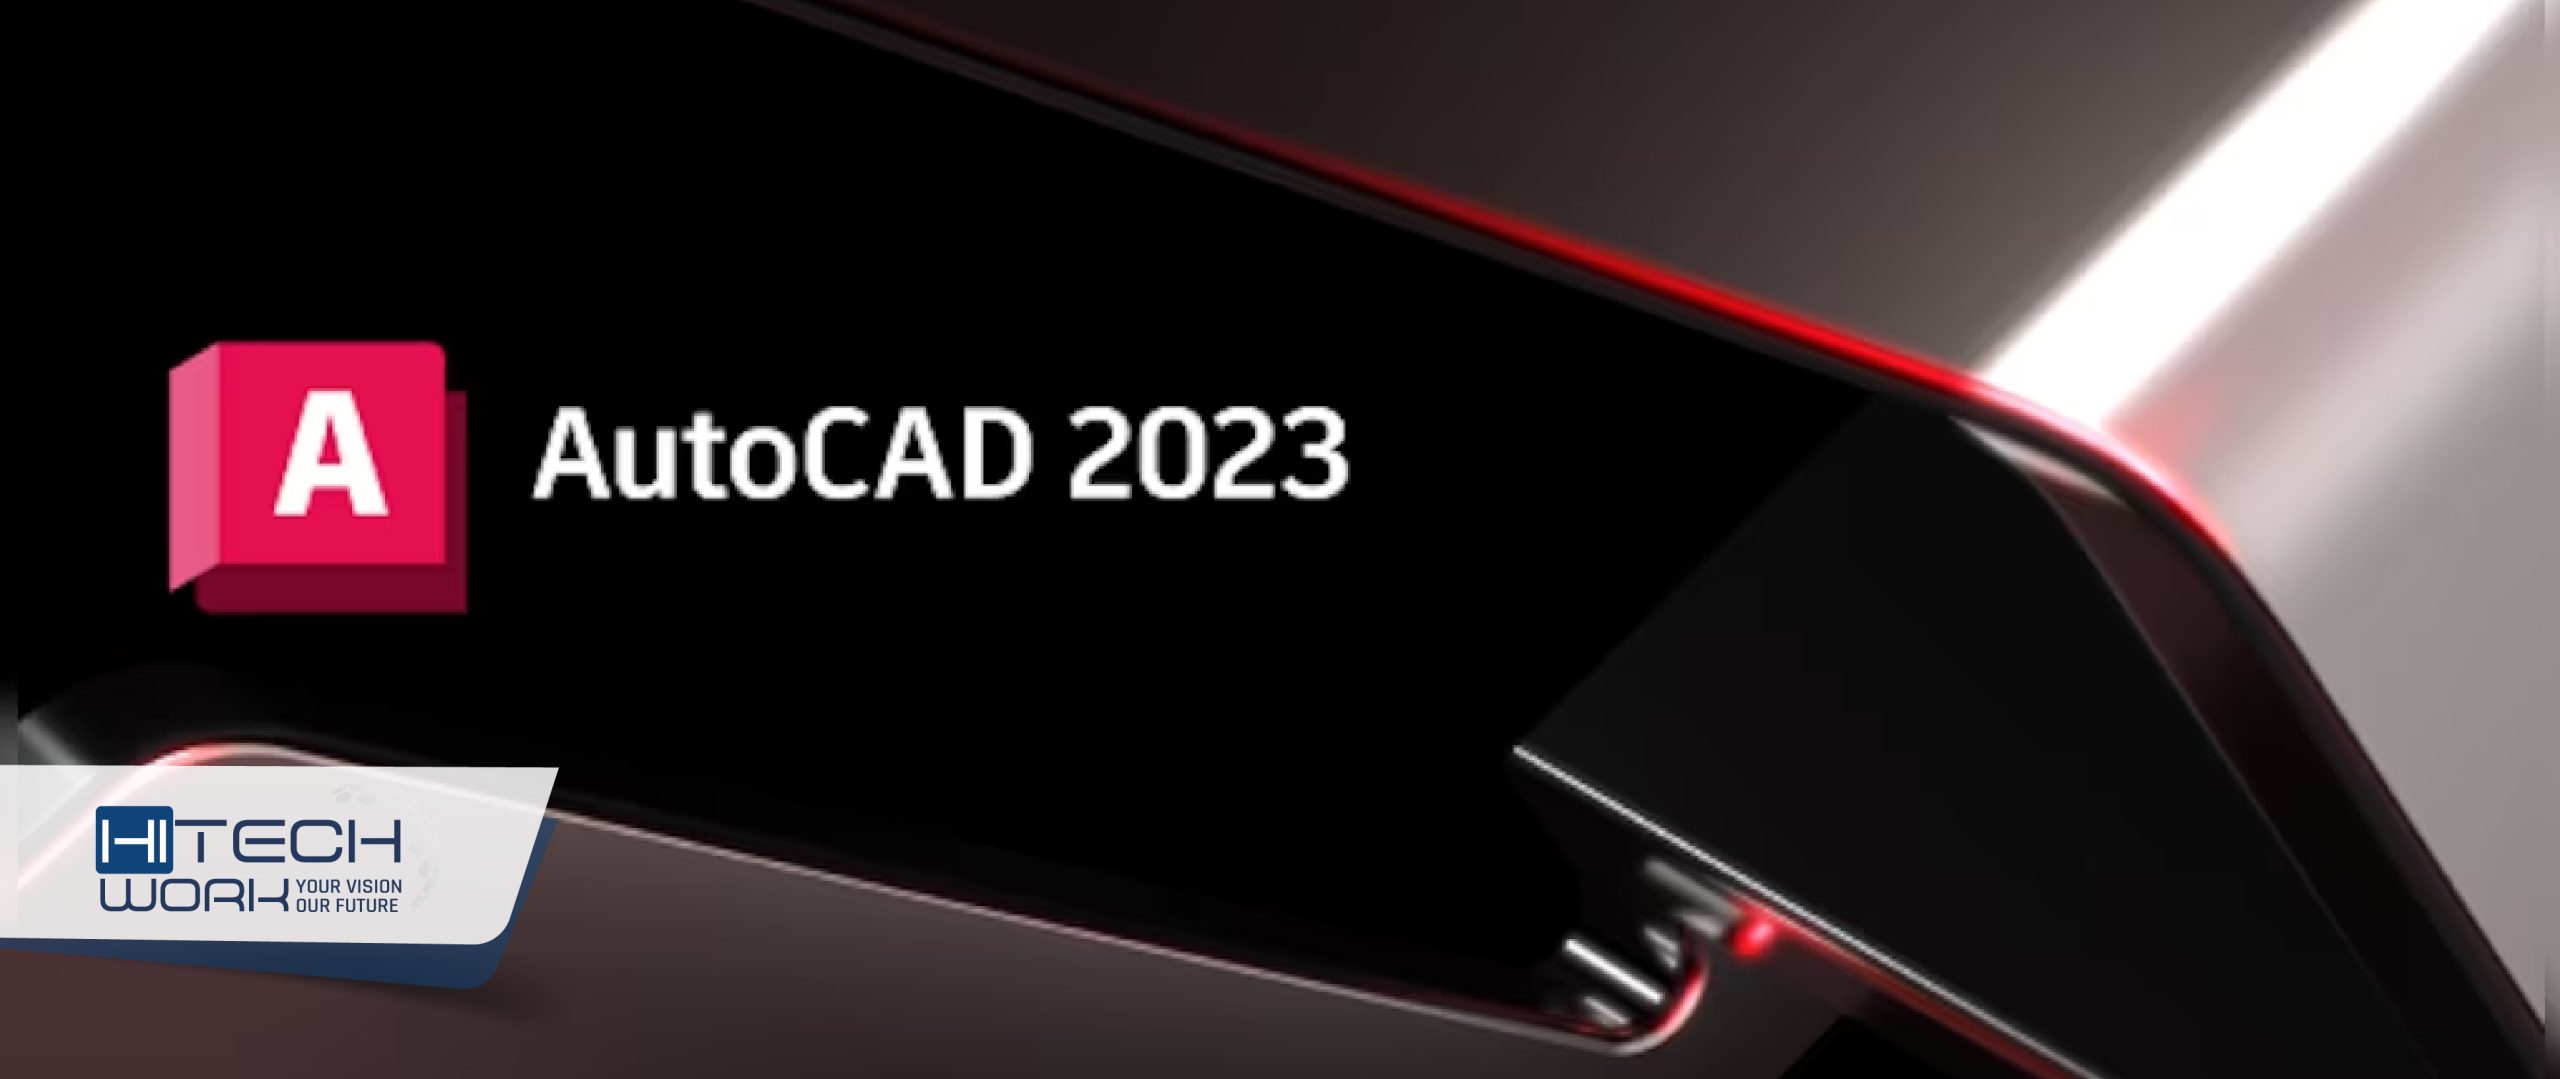 AutoCAD 2023 Product Key